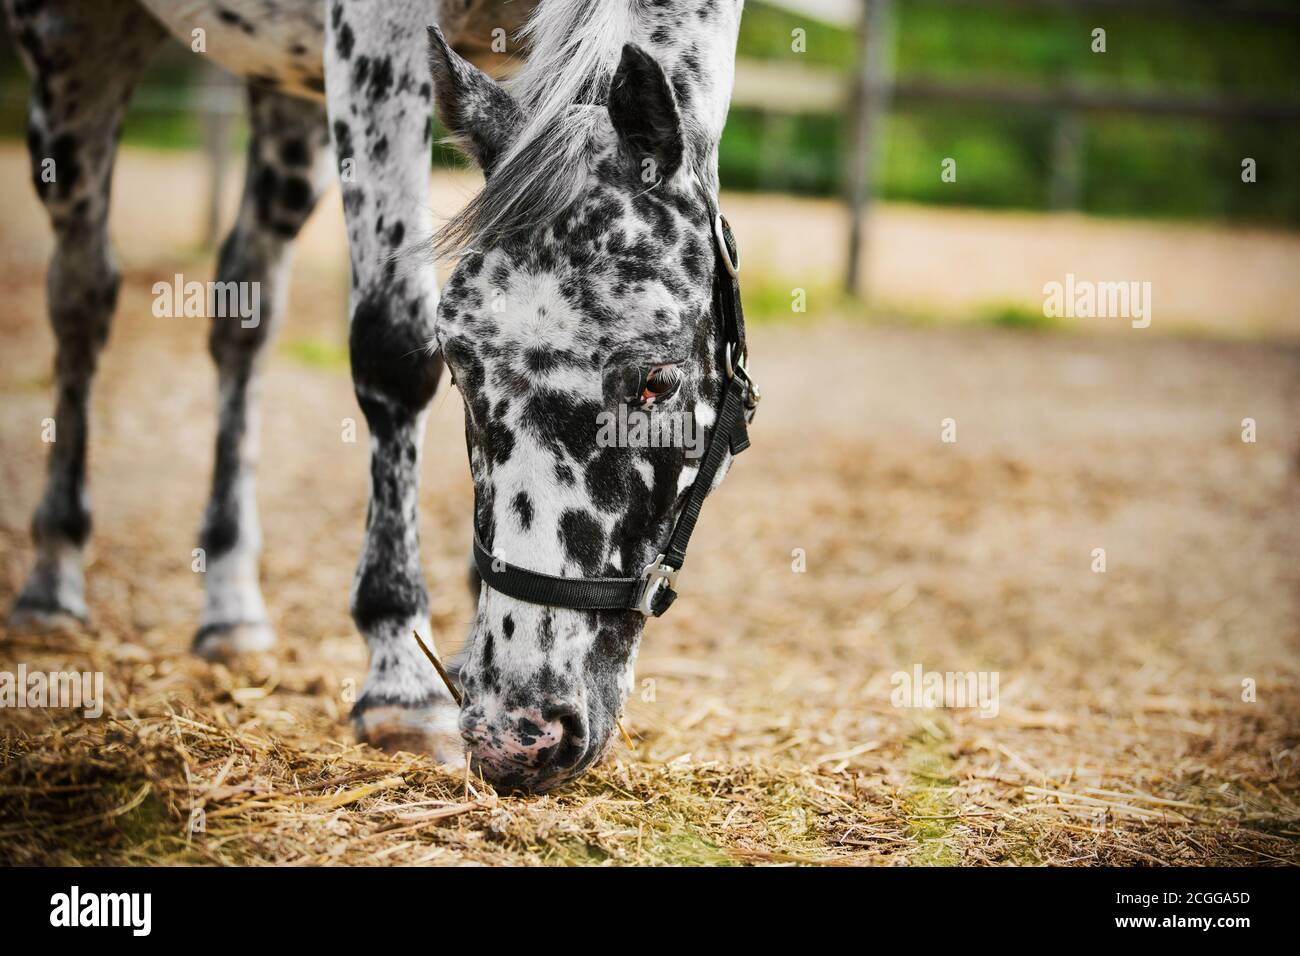 Portrait eines schönen schwarz-weißen Pferdes mit weißen Wimpern und einem Halfter an der Schnauze, das Heu und Gras frisst. Landwirtschaft. Die Pflege von Stockfoto